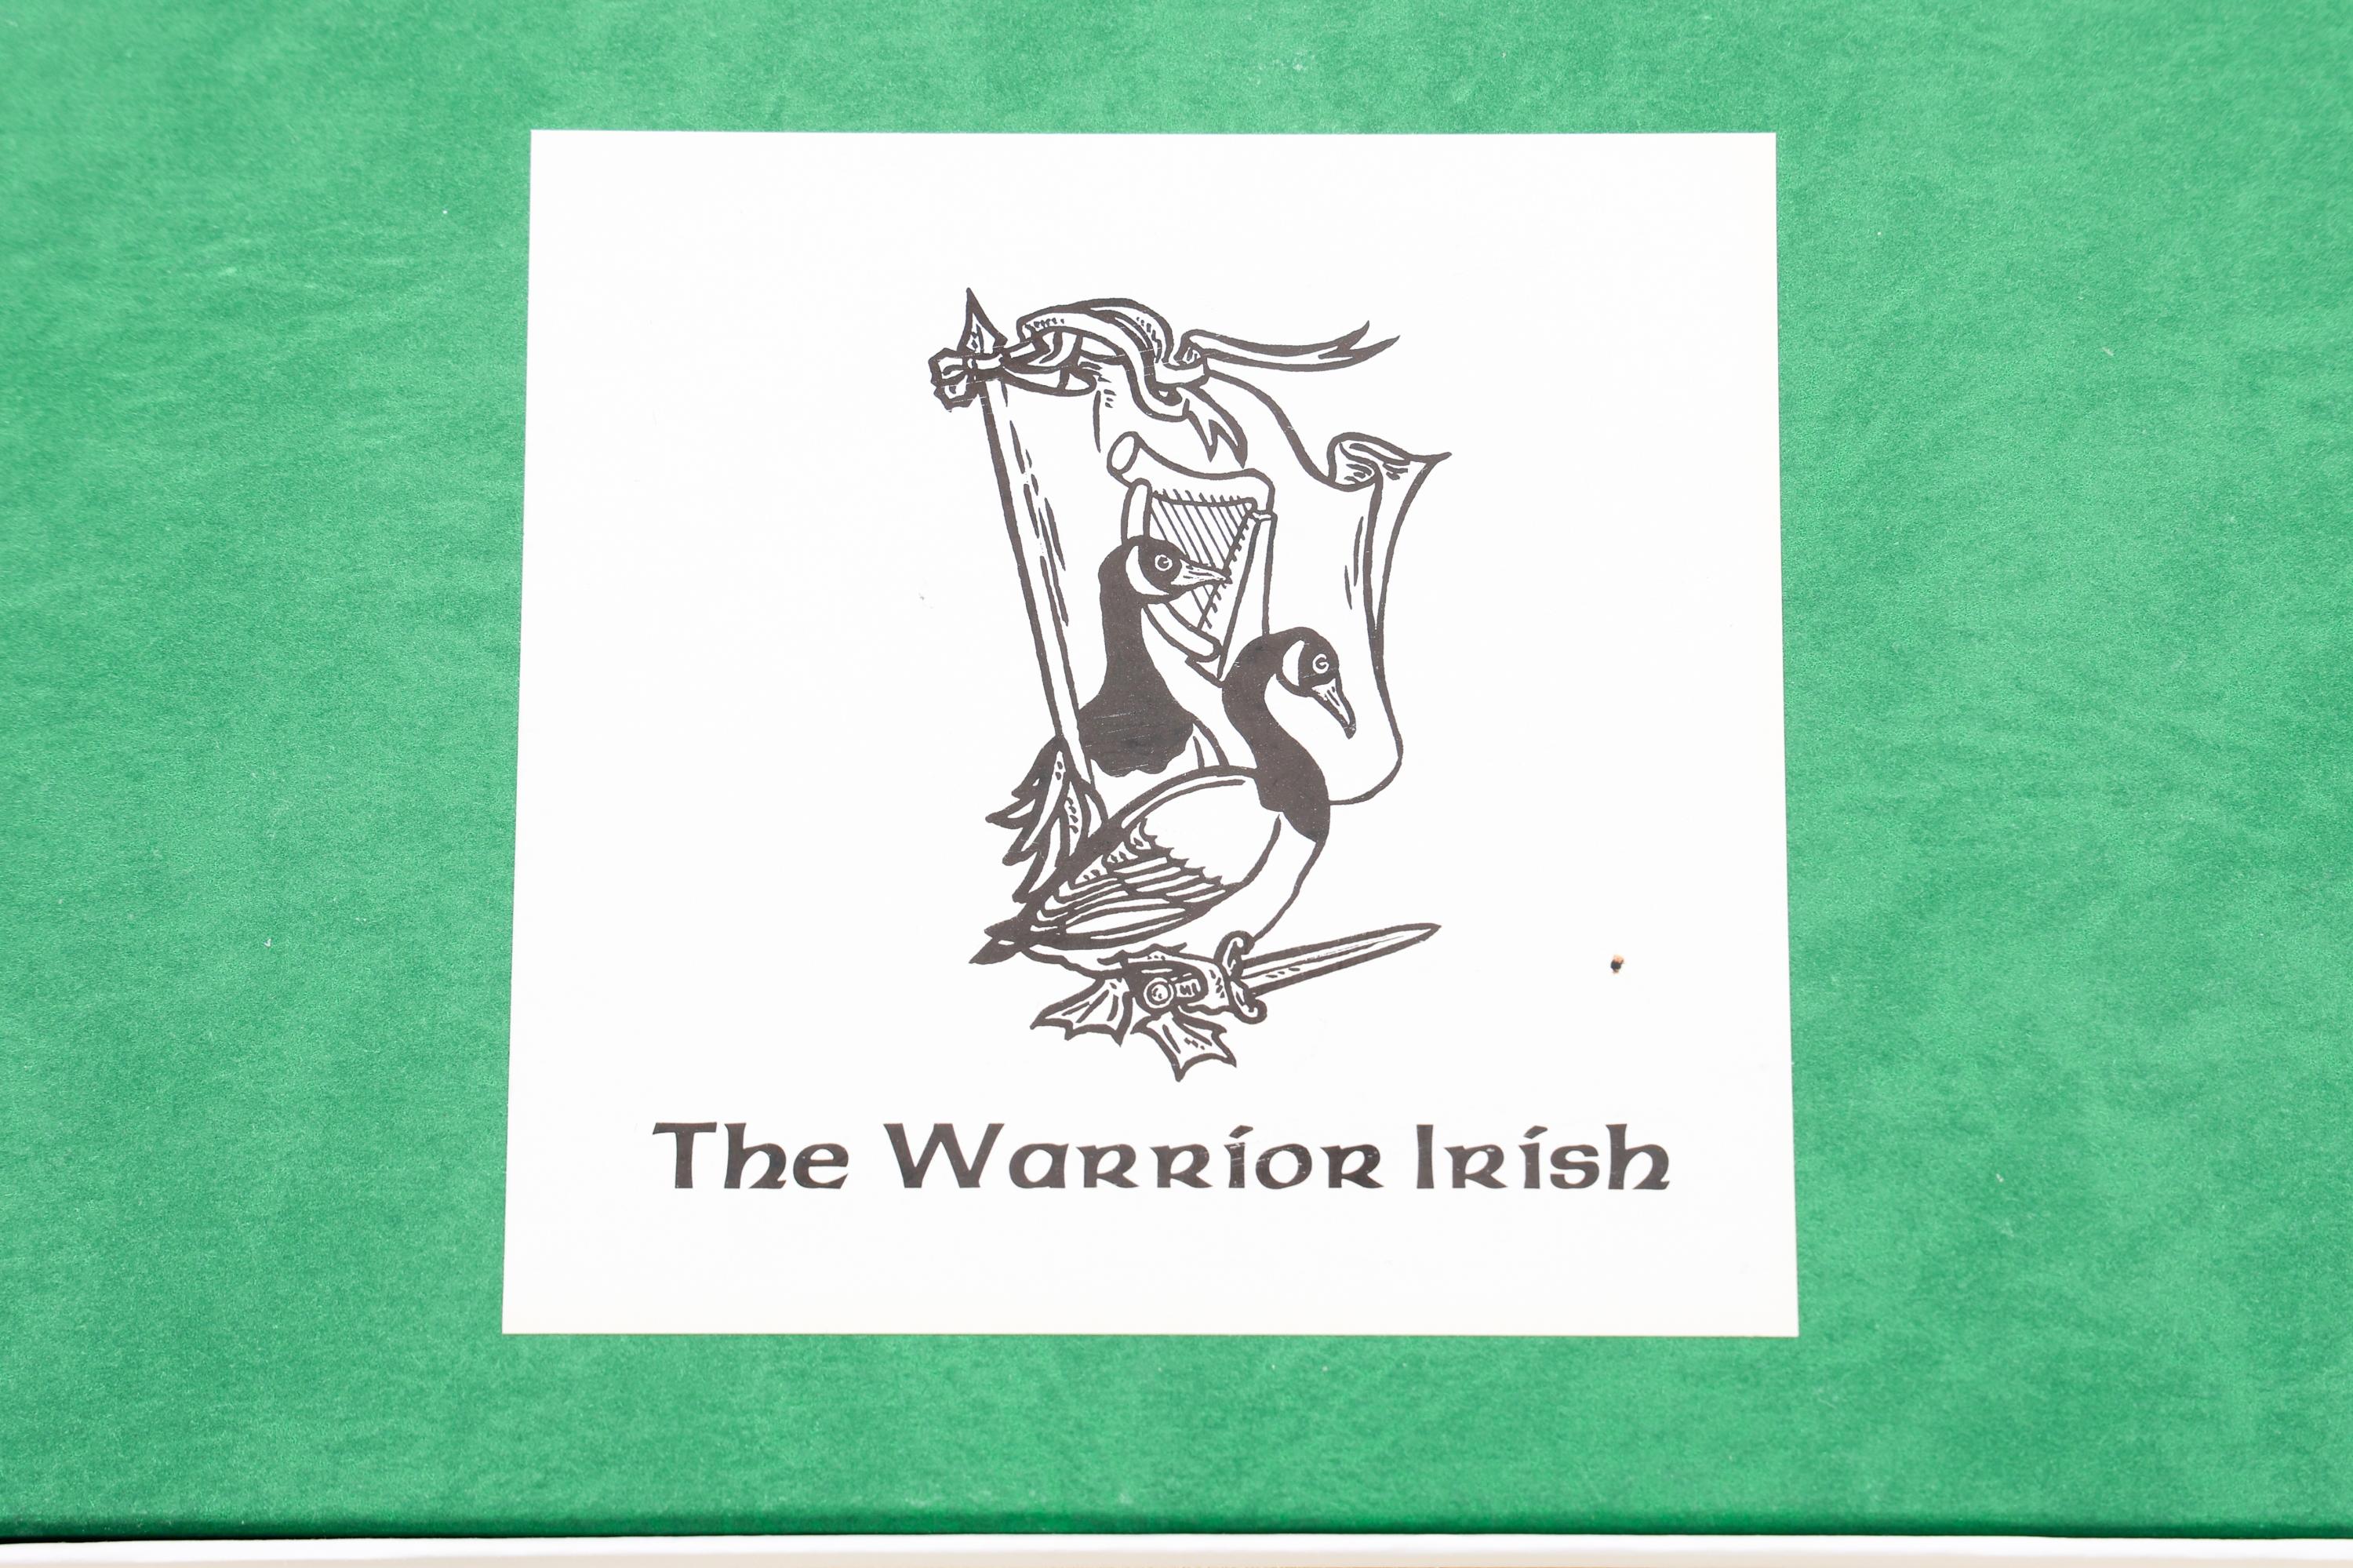 "THE WARRIOR IRISH" SOLDIER FIGURINES